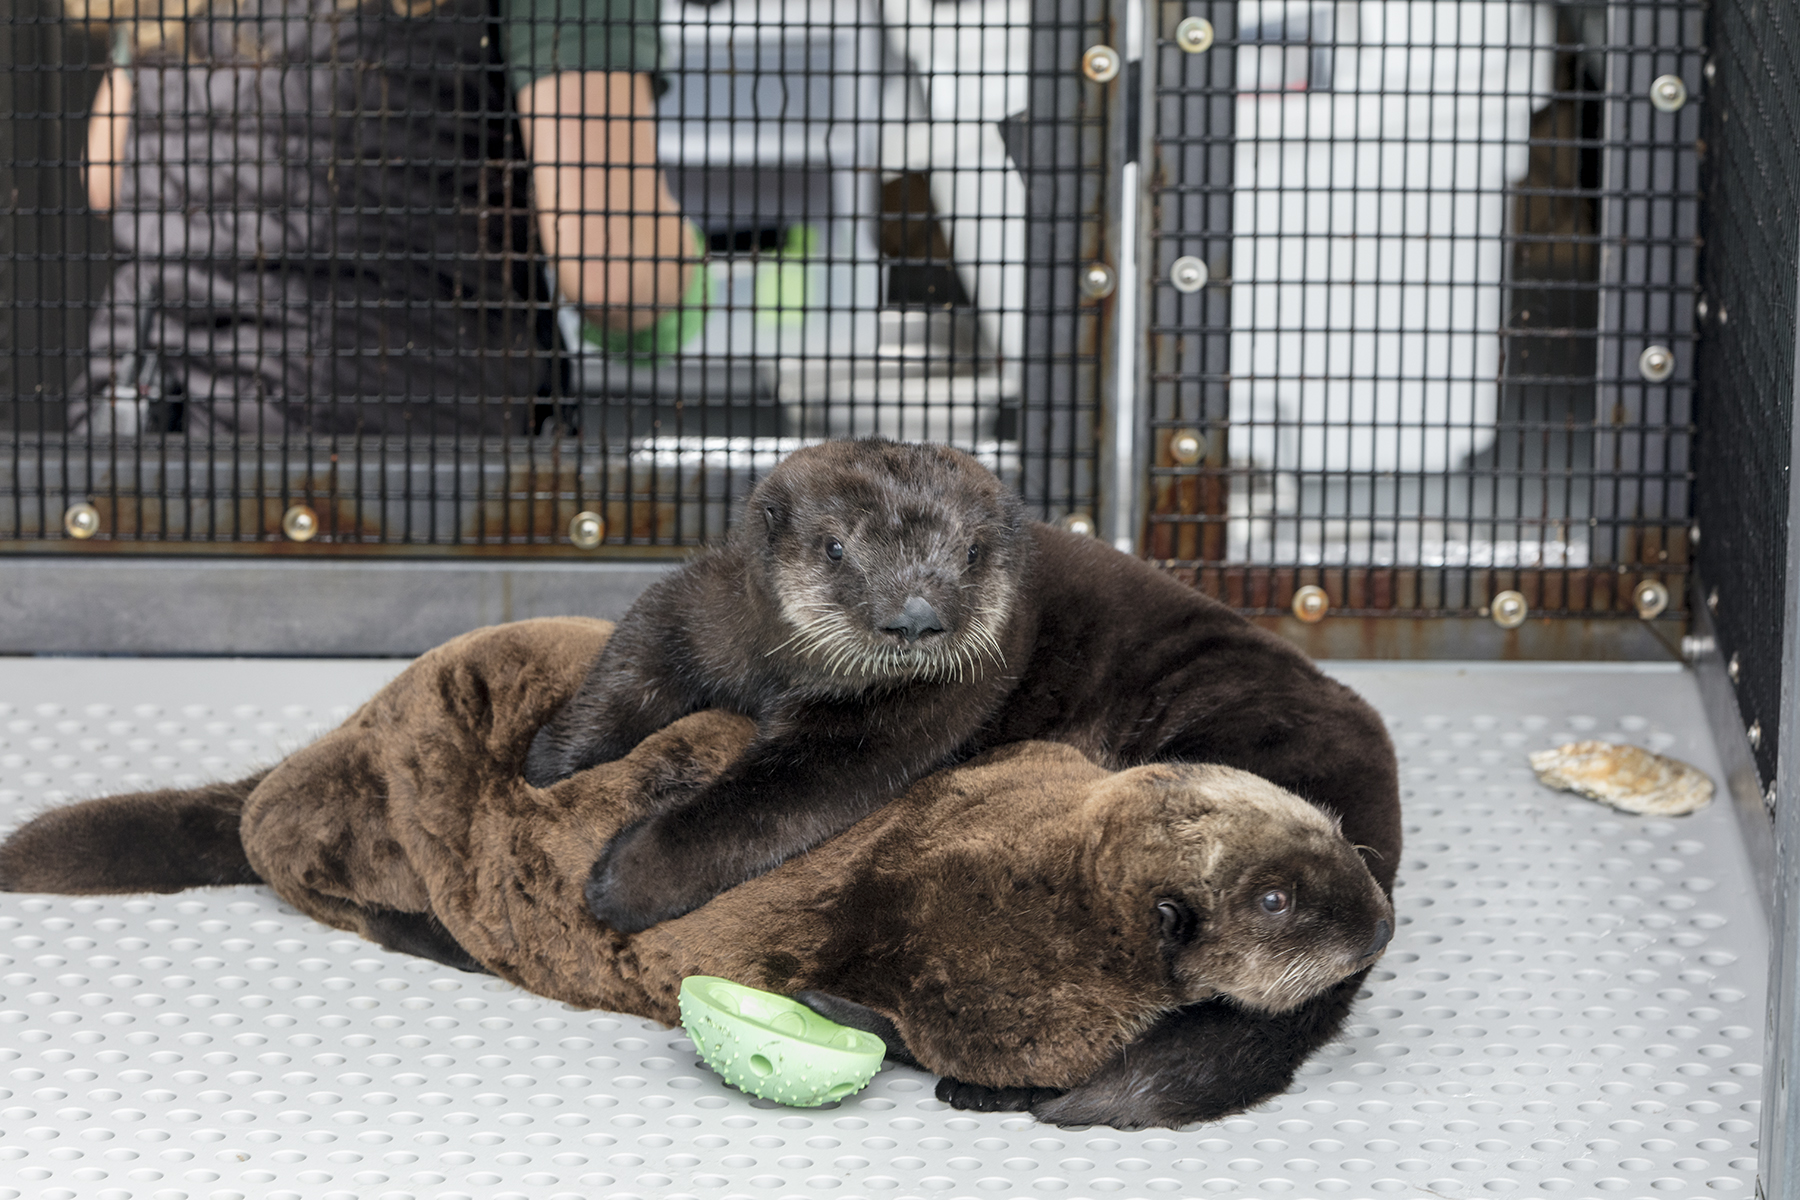 Sea otters at Shedd Aquarium